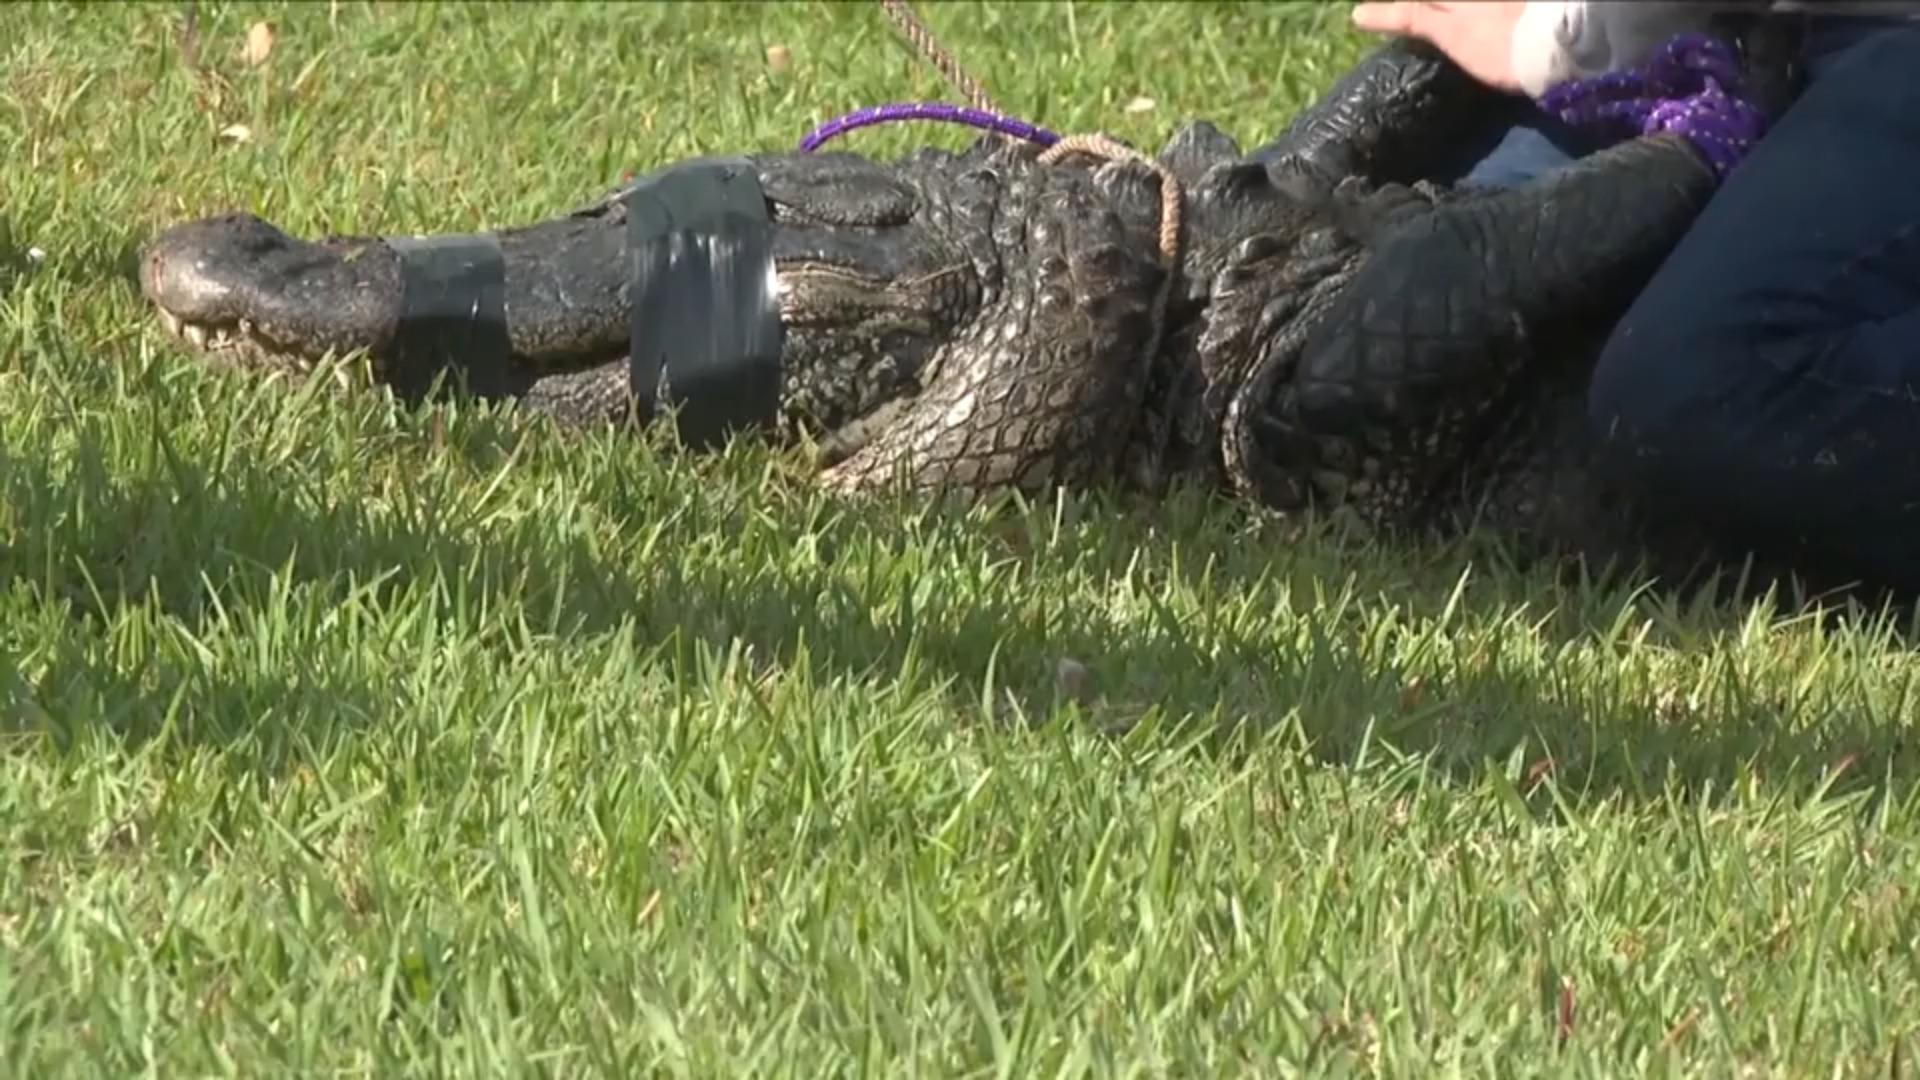 Frau (85) will Hund vor Alligator retten und wird getötet Killer-Reptil schießt aus dem Wasser